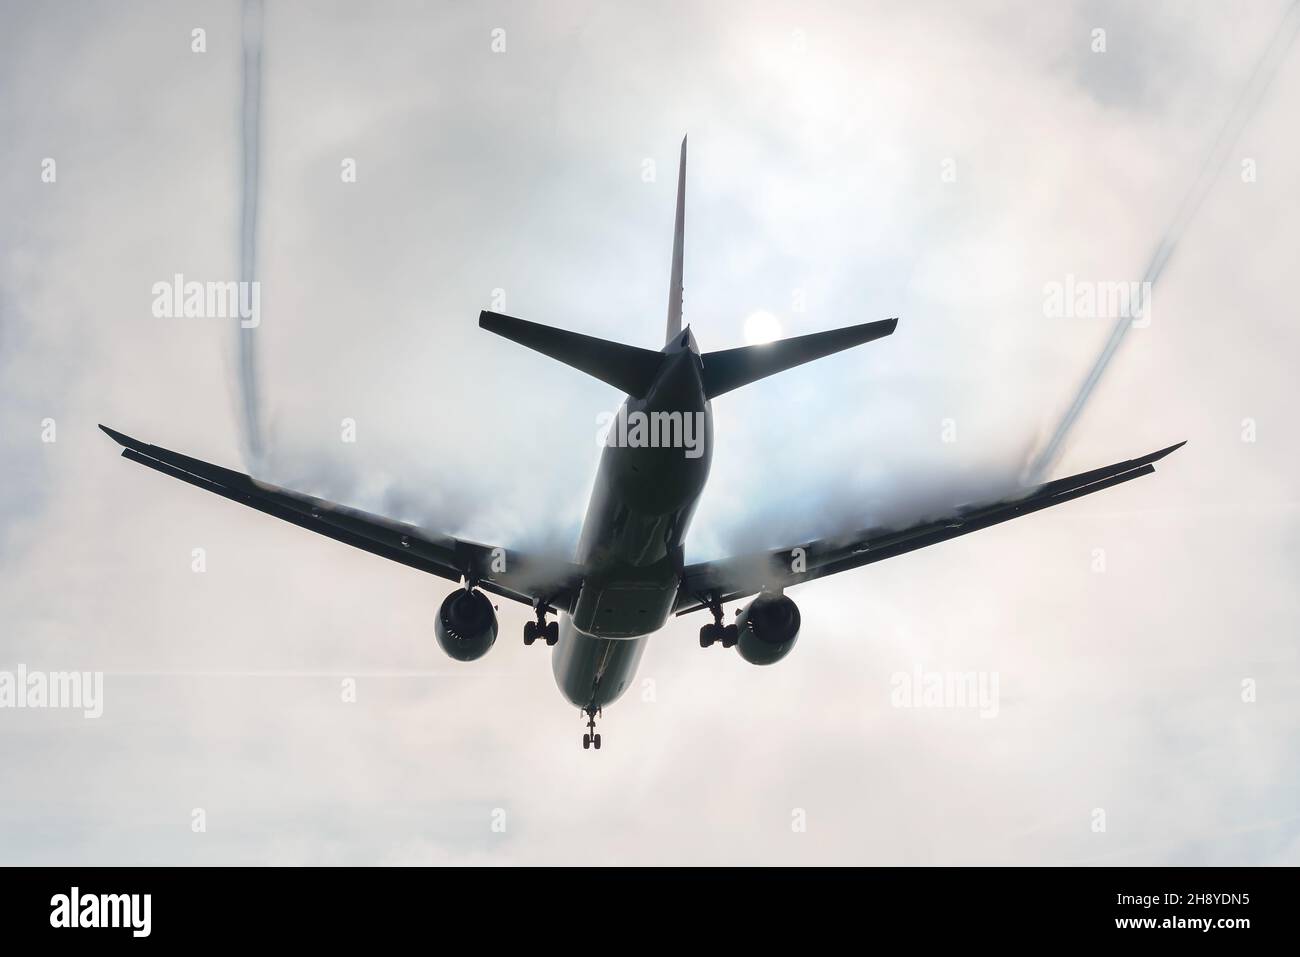 Flugzeuge im schweren Nebel mit Kondensation der Flügel und Luftwirbel. Die Aerodynamik der Luftfahrt wird im Flugzeug dargestellt, wobei die über den Flügelwehen kondensieren. Stockfoto